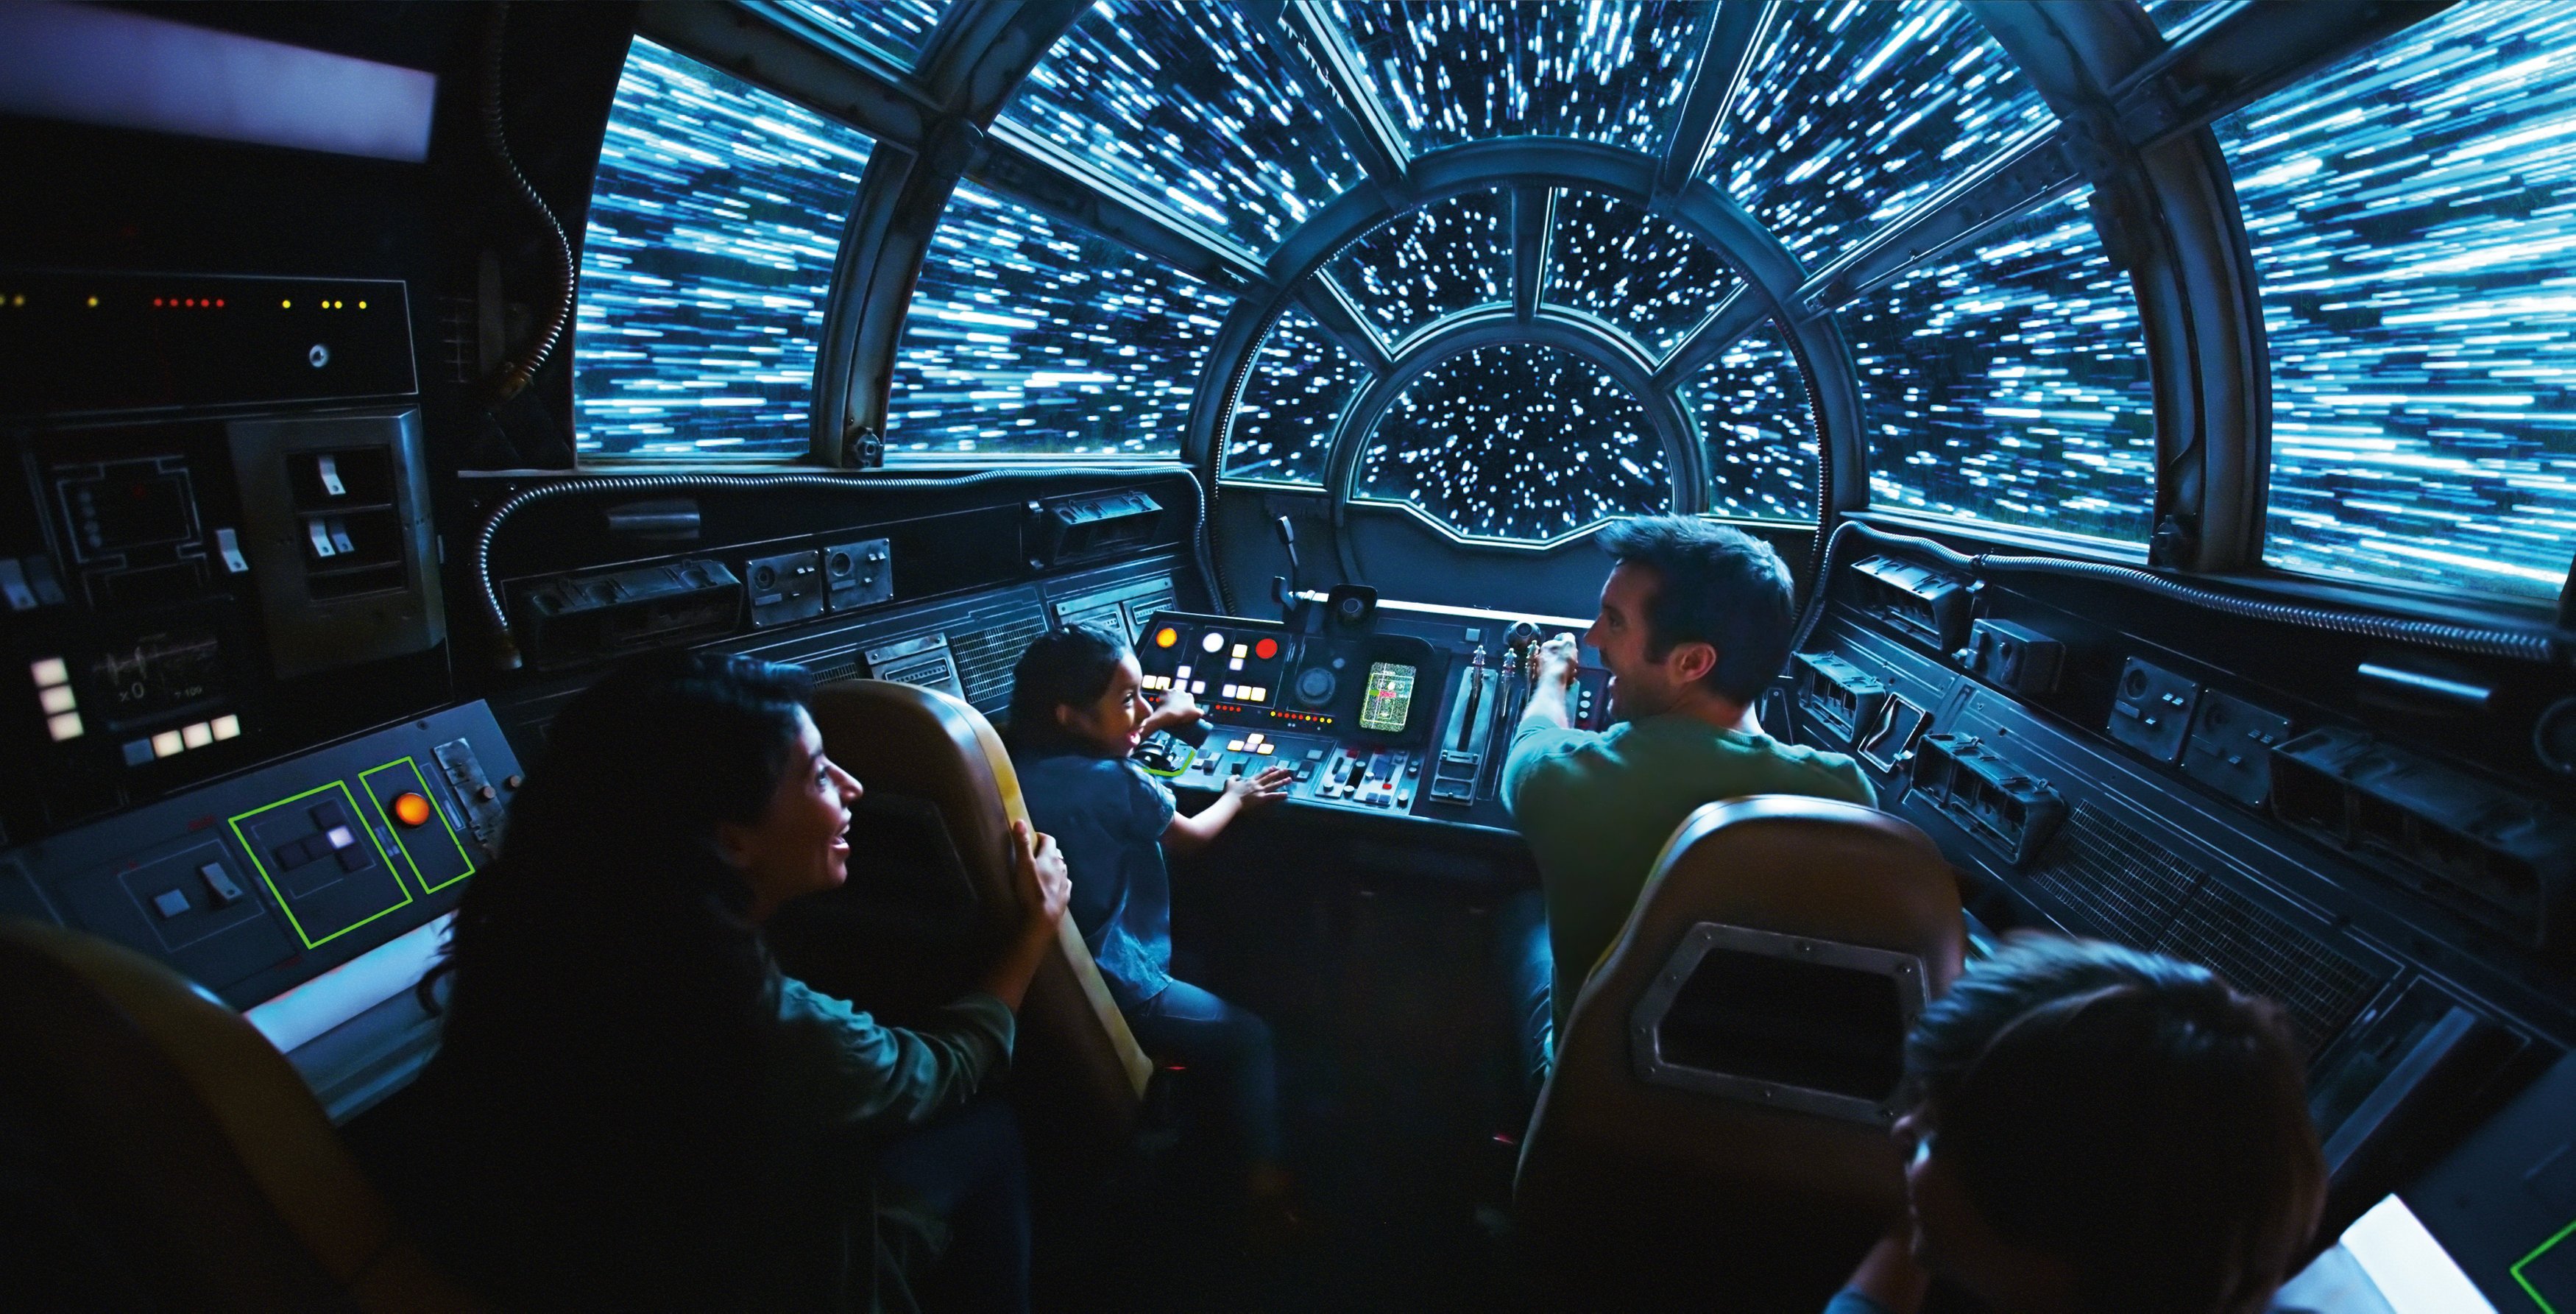 Guerra nas Estrelas: A Borda da Galáxia, dentro da Millennium Falcon: exibição Smugglers Run, vista nesta imagem da Disney Parks lançada da Disneyland Resort em Anaheim, Califórnia, EUA, 27 de fevereiro de 2019.